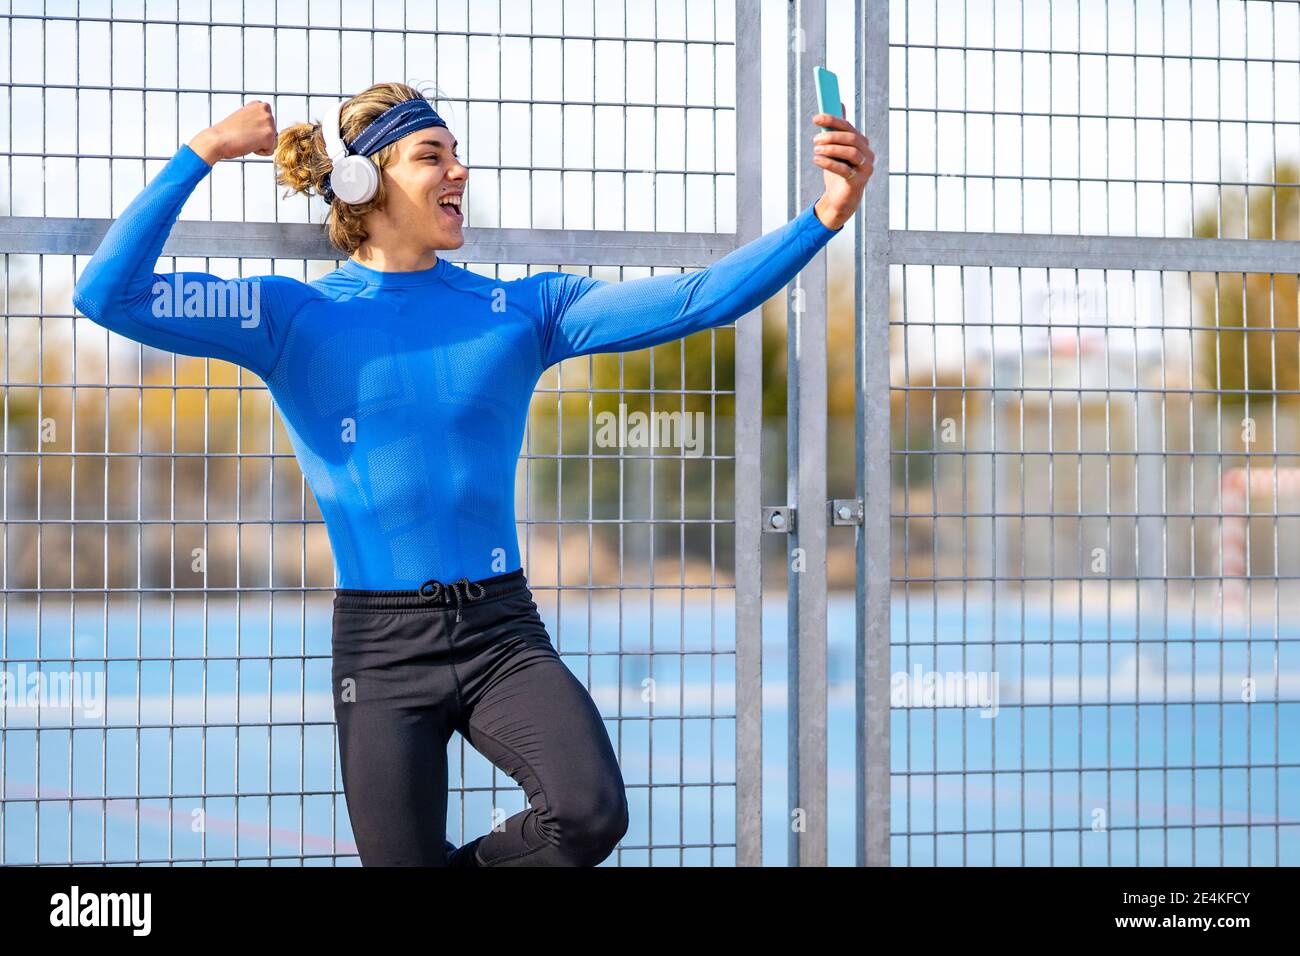 Atleta maschile con bocca aperta prendendo selfie mostrando bicep contro recinzione in giornata di sole Foto Stock